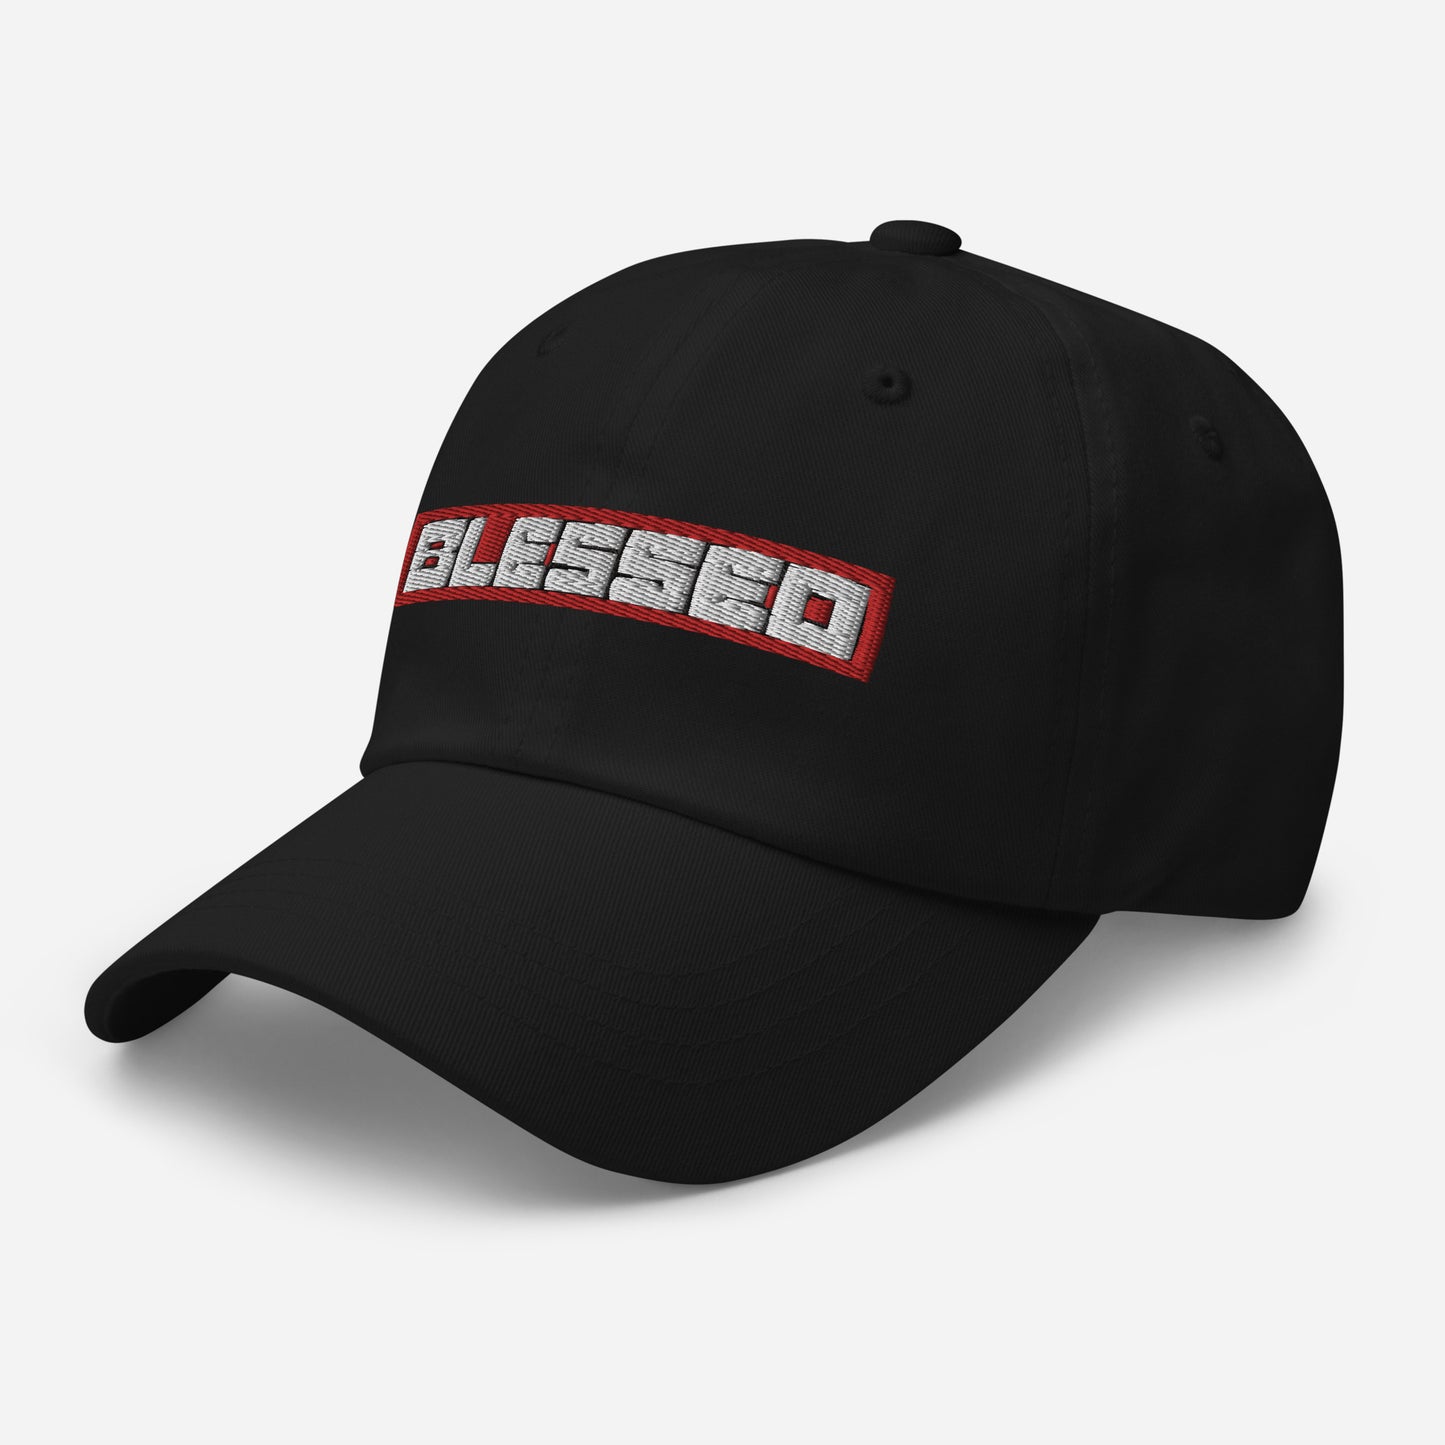 BLESSED BLACK CAP